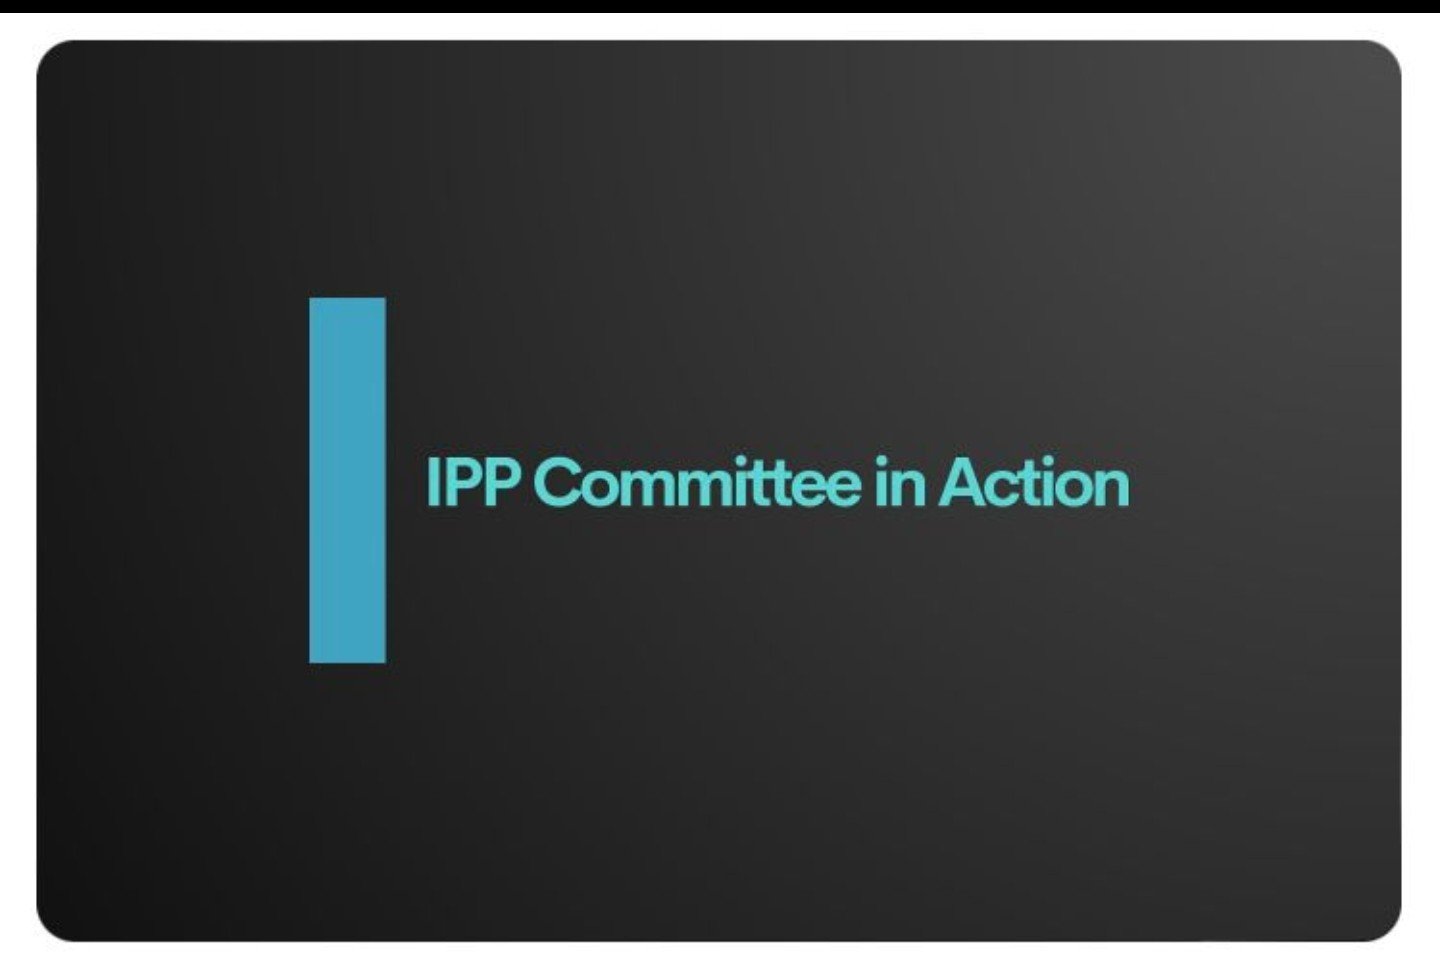 IPP COMMITTEE IN ACTION